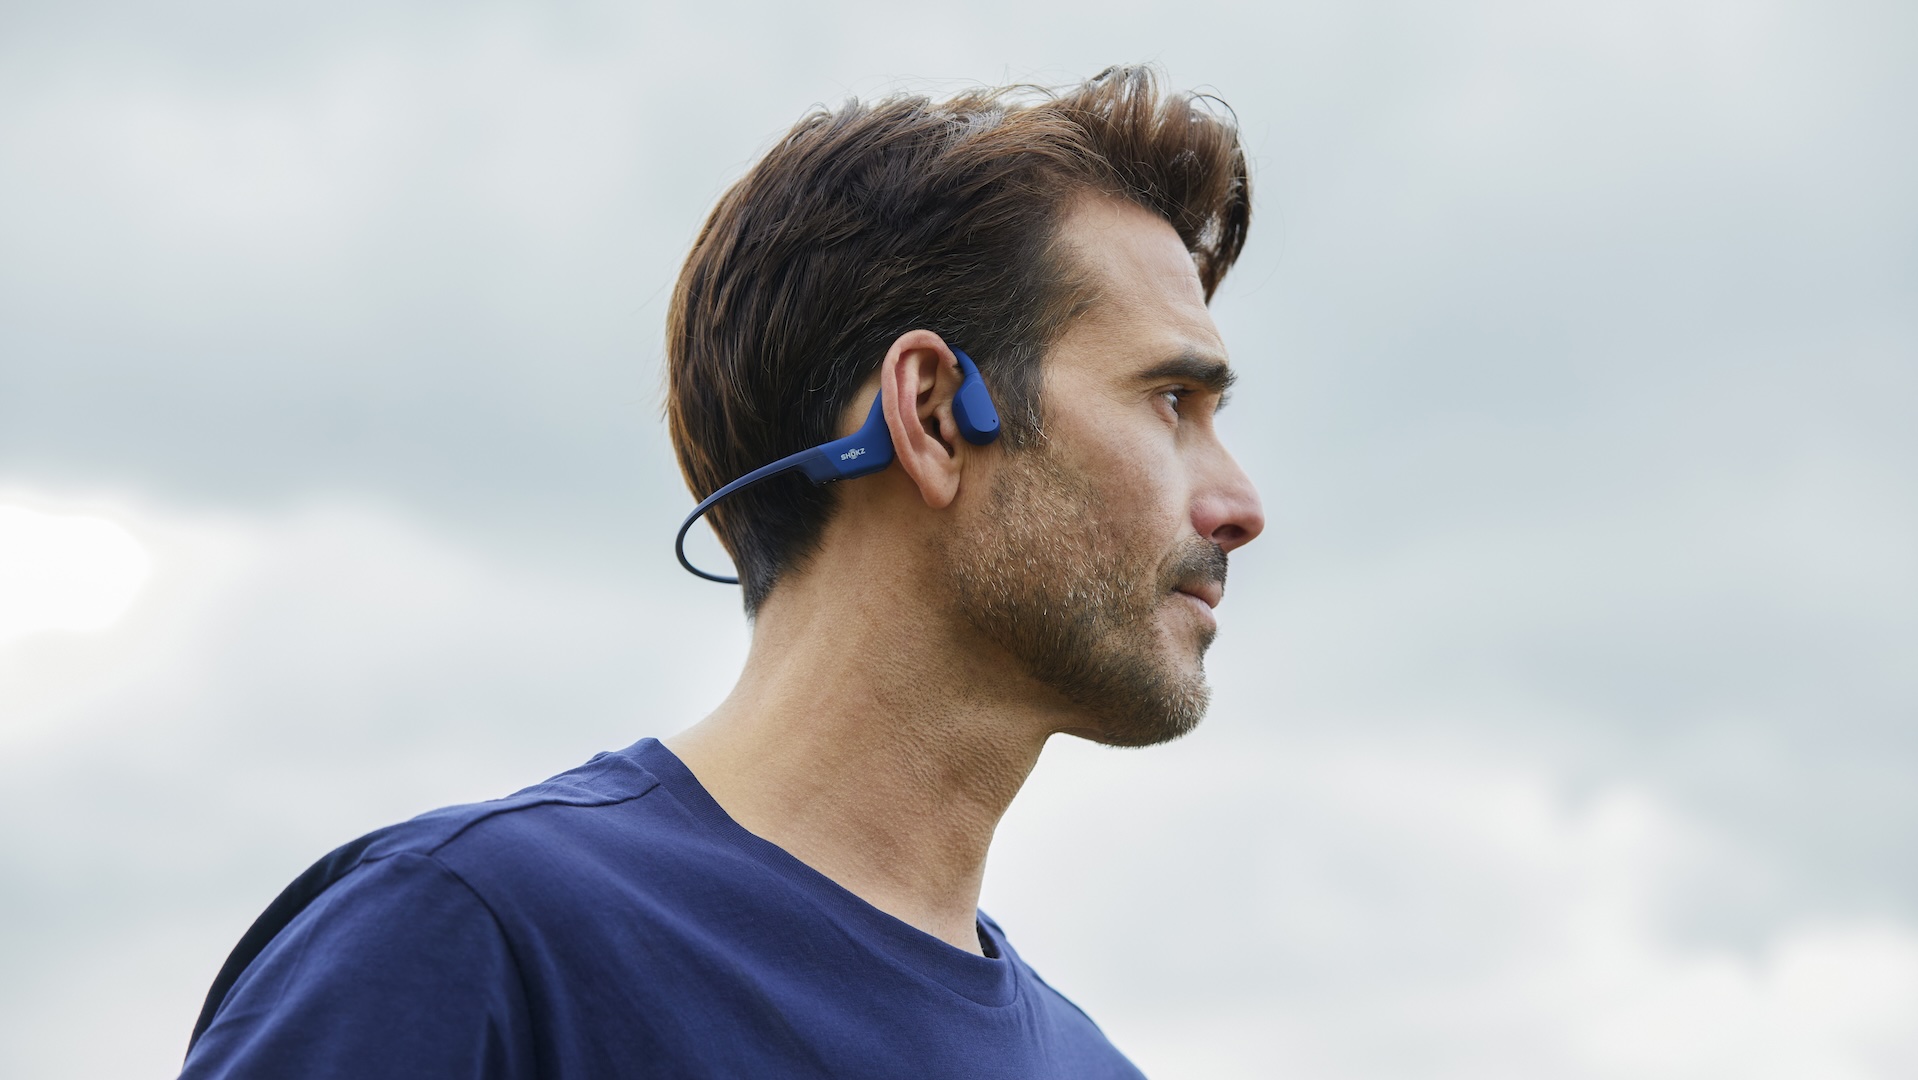 Shokz OpenRun Mini casque de sport à écouteurs ouverts à conduction osseuse